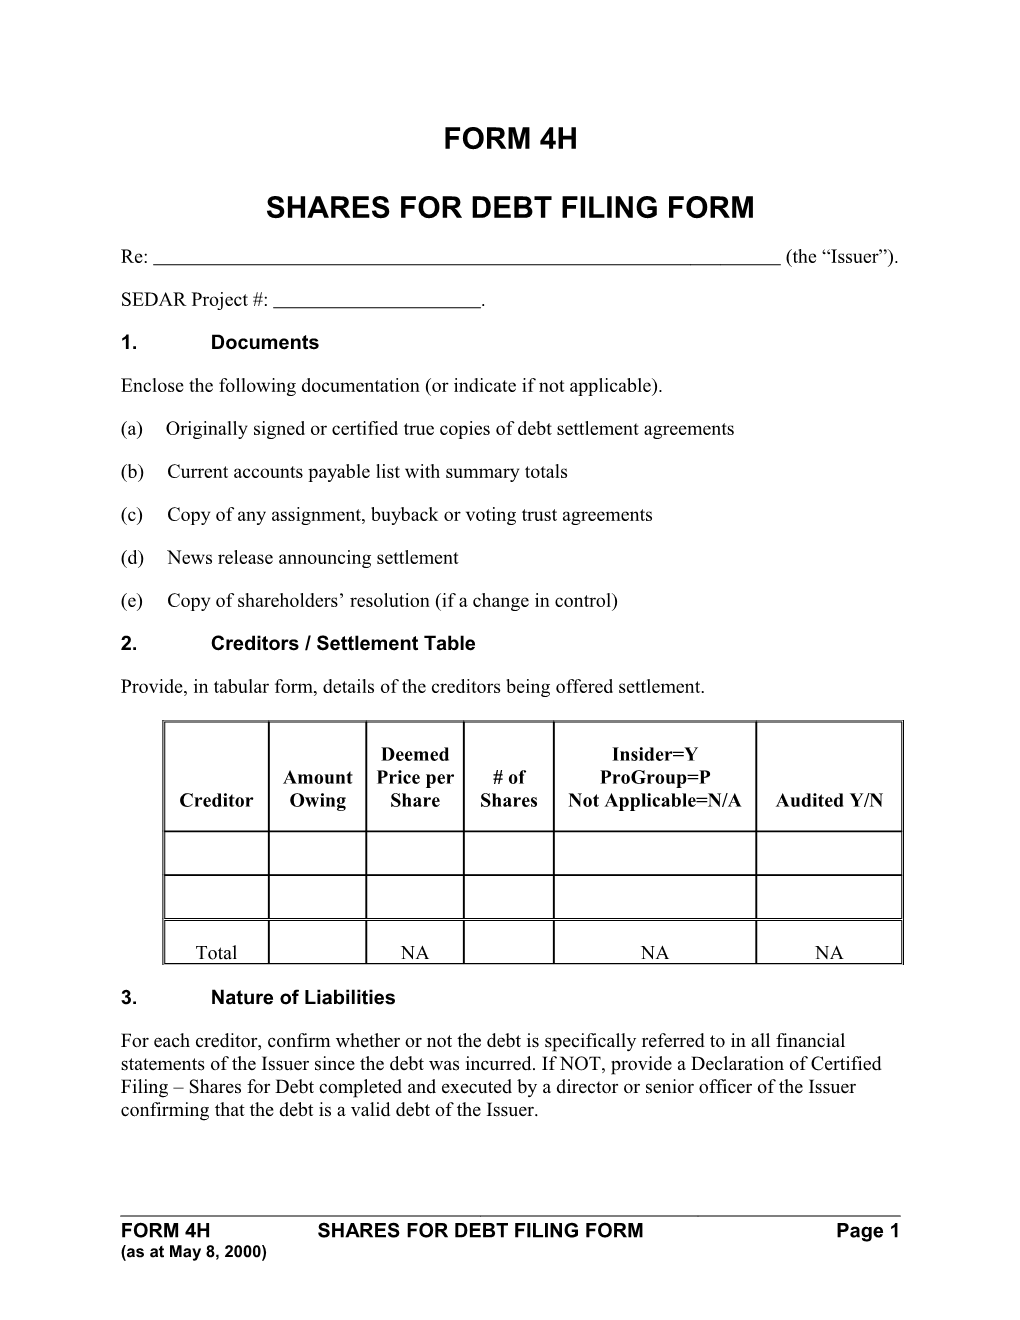 Shares for Debt Filing Form